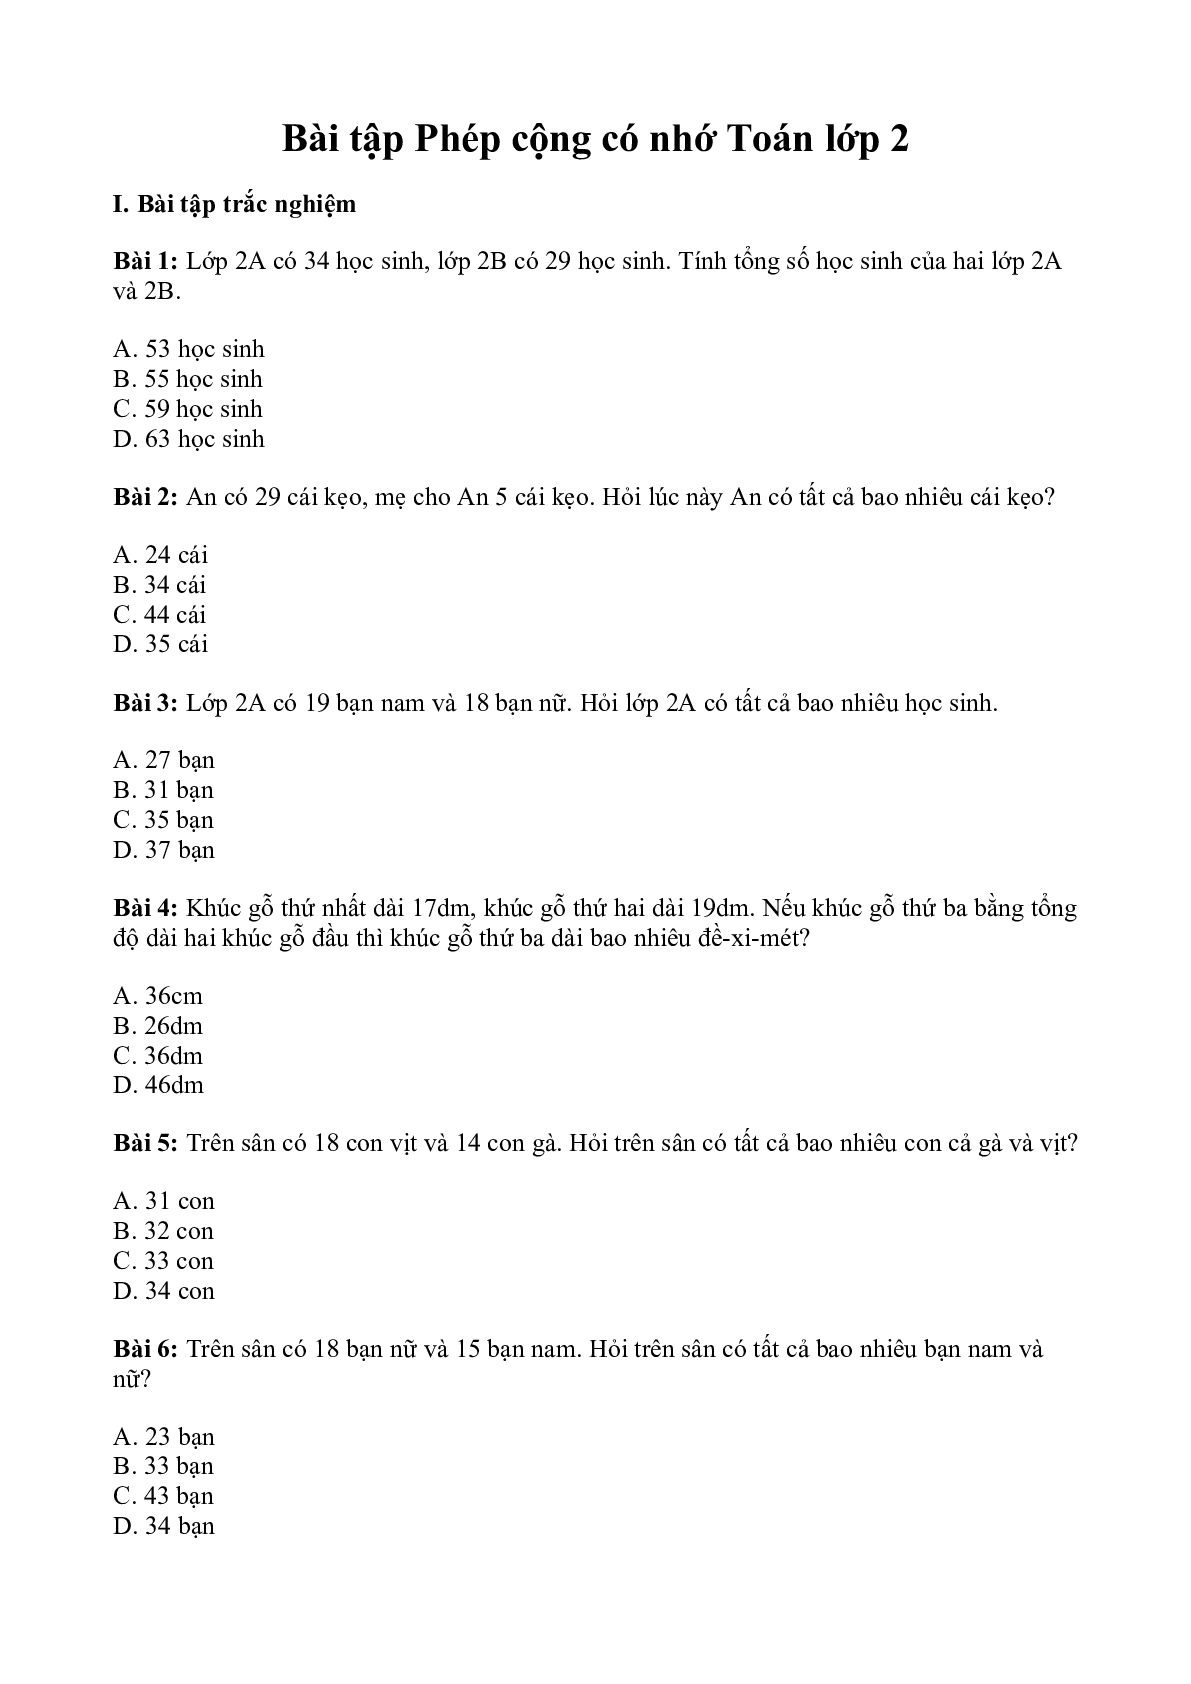 Bài tập toán phép cộng có nhớ môn Toán lớp 2 (trang 1)